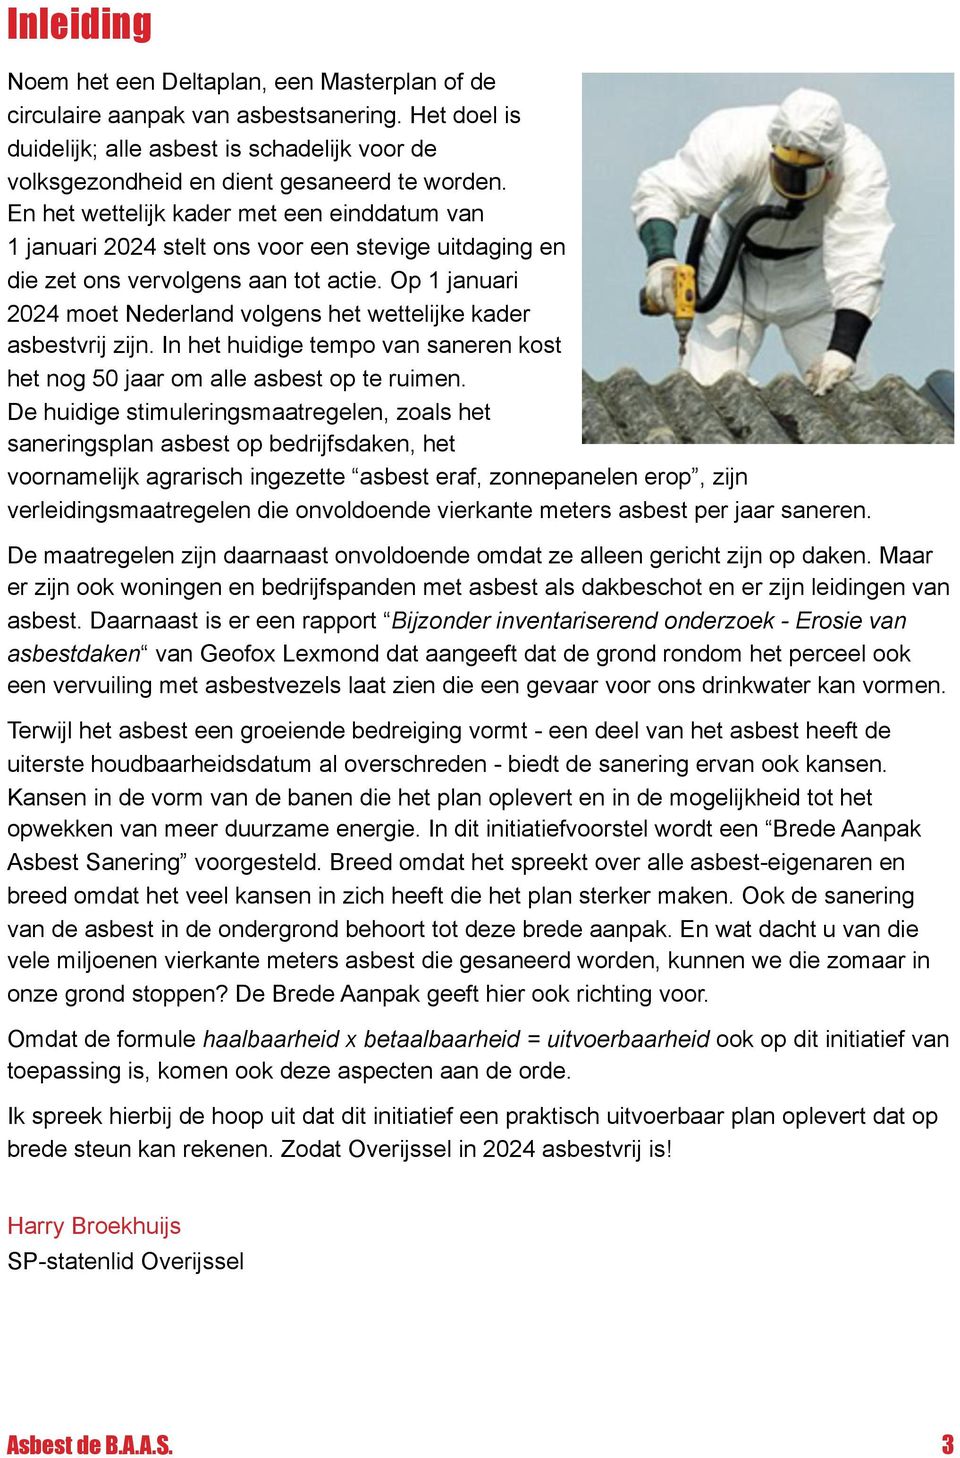 Op 1 januari 2024 moet Nederland volgens het wettelijke kader asbestvrij zijn. In het huidige tempo van saneren kost het nog 50 jaar om alle asbest op te ruimen.